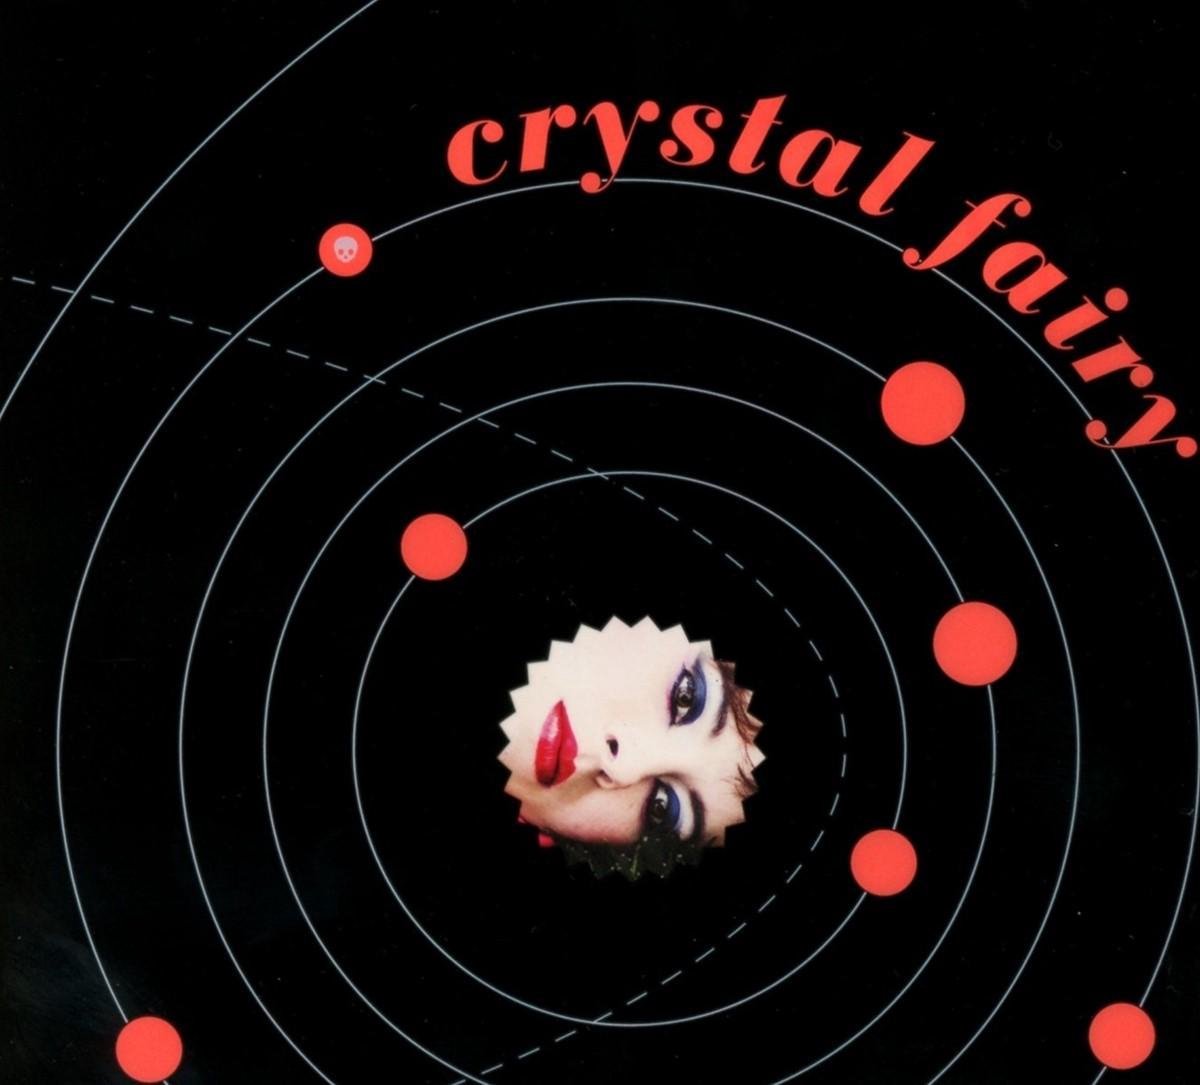 Crystal Fairy - Crystal Fairy (CD)